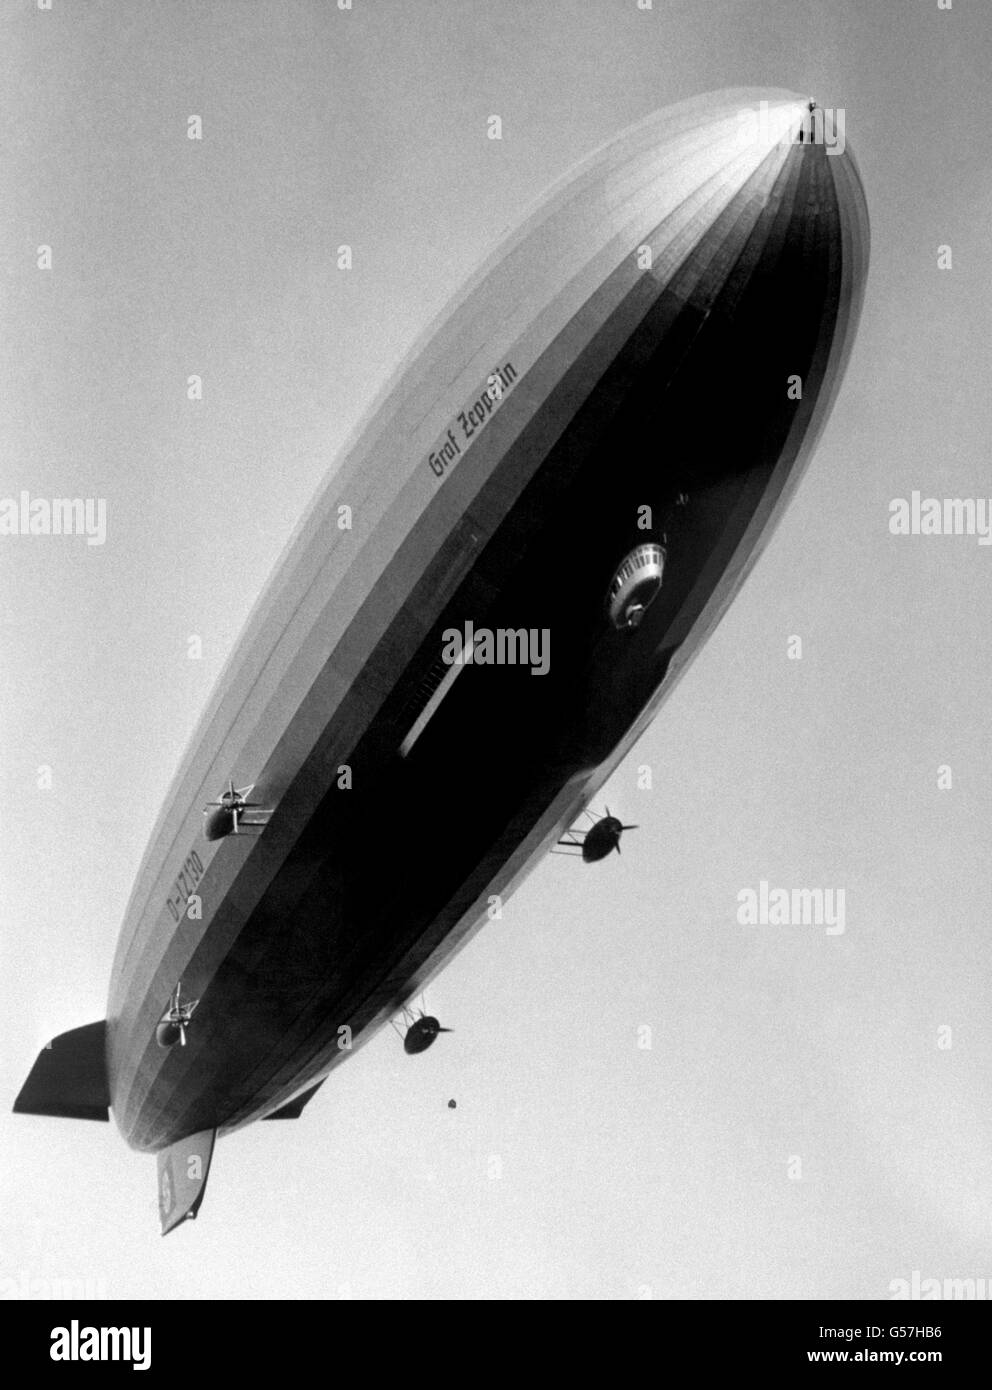 GRAF ZEPPELIN: Das deutsche Luftschiff 'Graf Zeppelin' am Flughafen Lowenthal nach ihrem Erstflug. Am 29. August 1929 machte das Luftschiff Geschichte, als es in 21 Tagen, 7 Stunden und 26 Minuten um den Globus flog Stockfoto